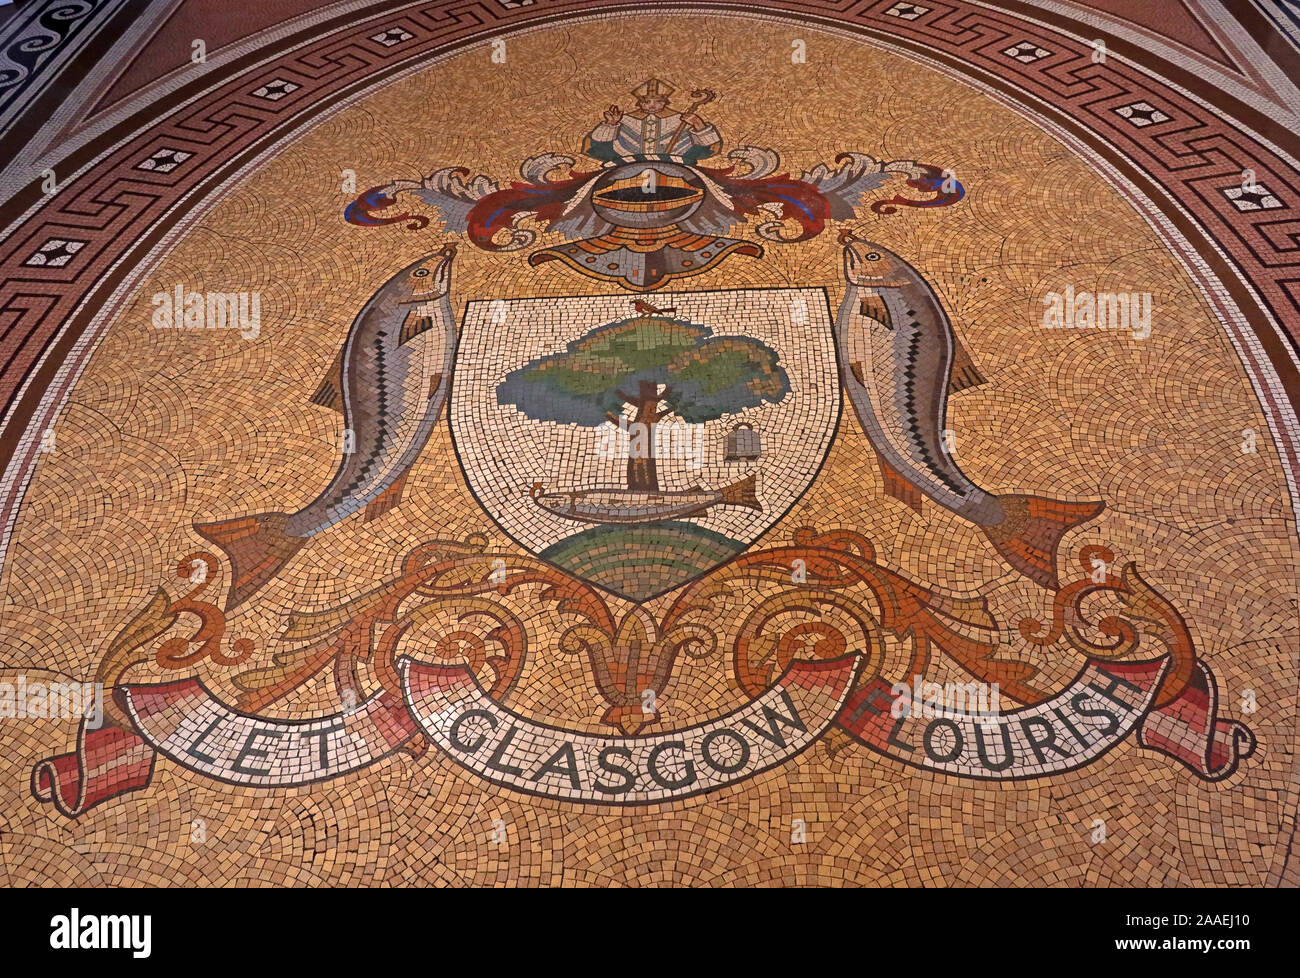 Laisser s'épanouir la mosaïque, le Glasgow Glasgow armoiries : oiseau, arbre, Bell et le poisson, de City Chambers, George Square, Écosse, Royaume-Uni, G2 1DU Banque D'Images